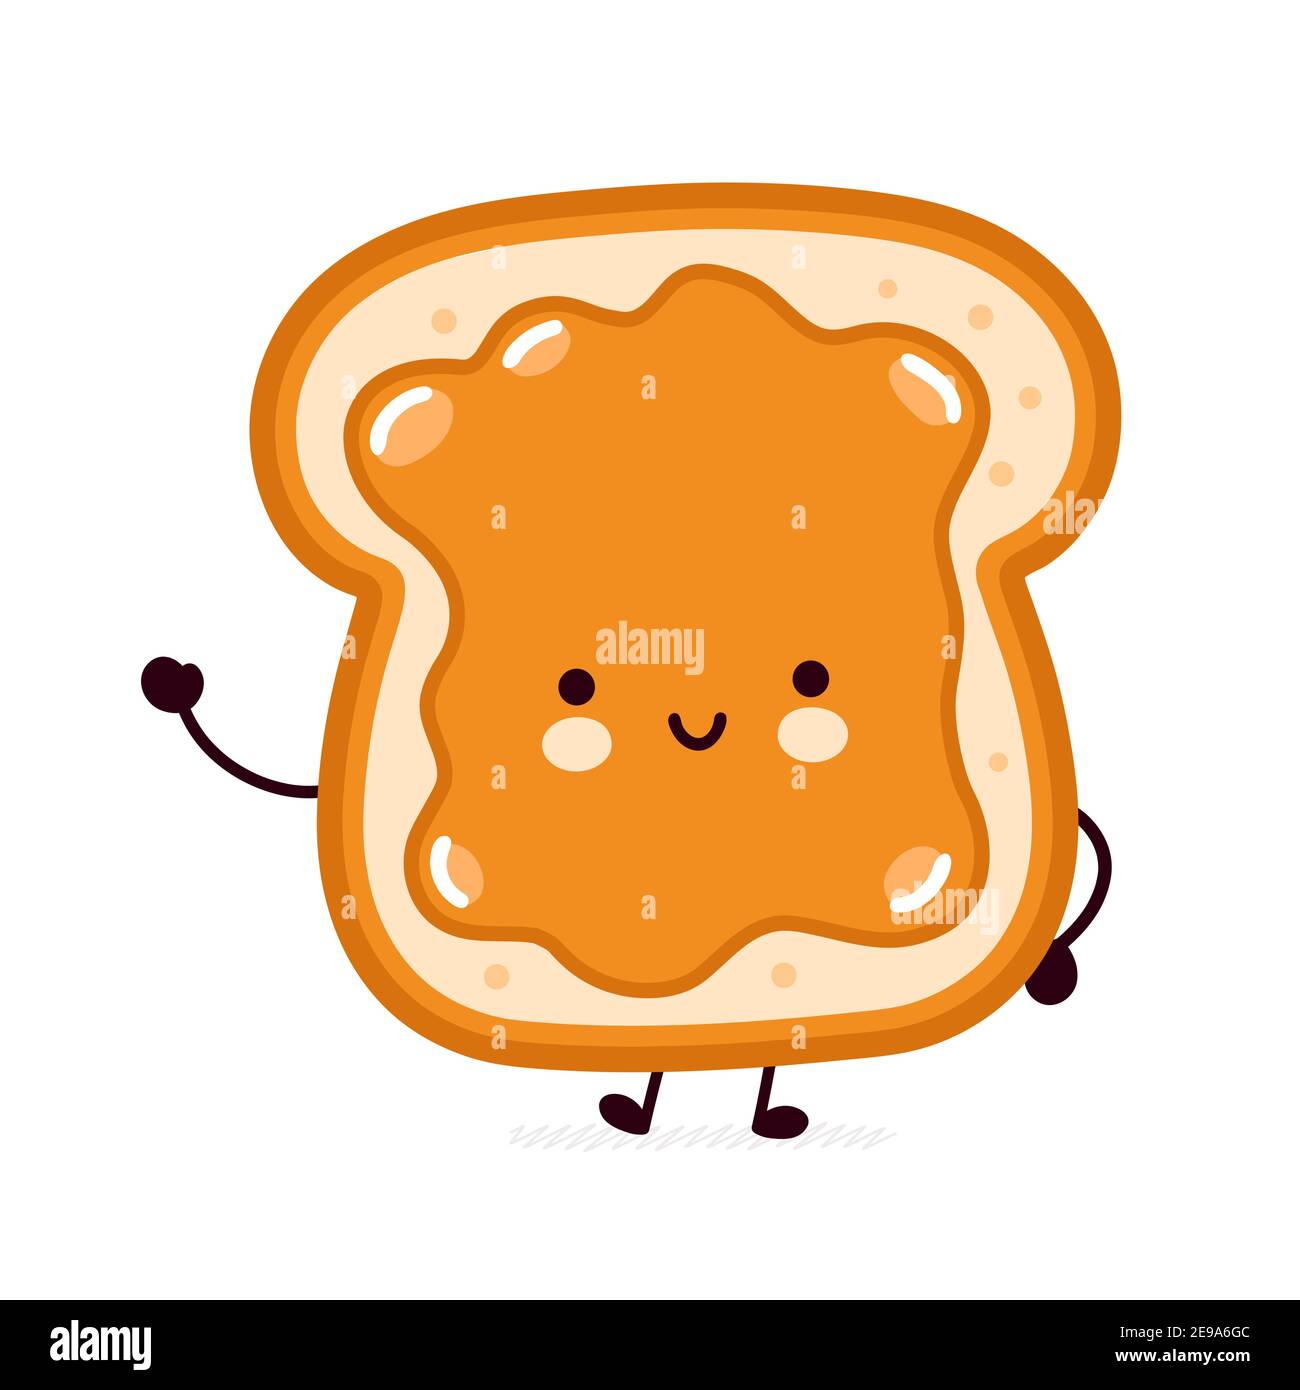 Delizioso pane tostato divertente con il carattere burro di arachidi. Icona di illustrazione del carattere kawaii della cartoon vettoriale a linea piatta. Isolato su sfondo bianco. Toast con concetto di mascotte del carattere del viso Illustrazione Vettoriale